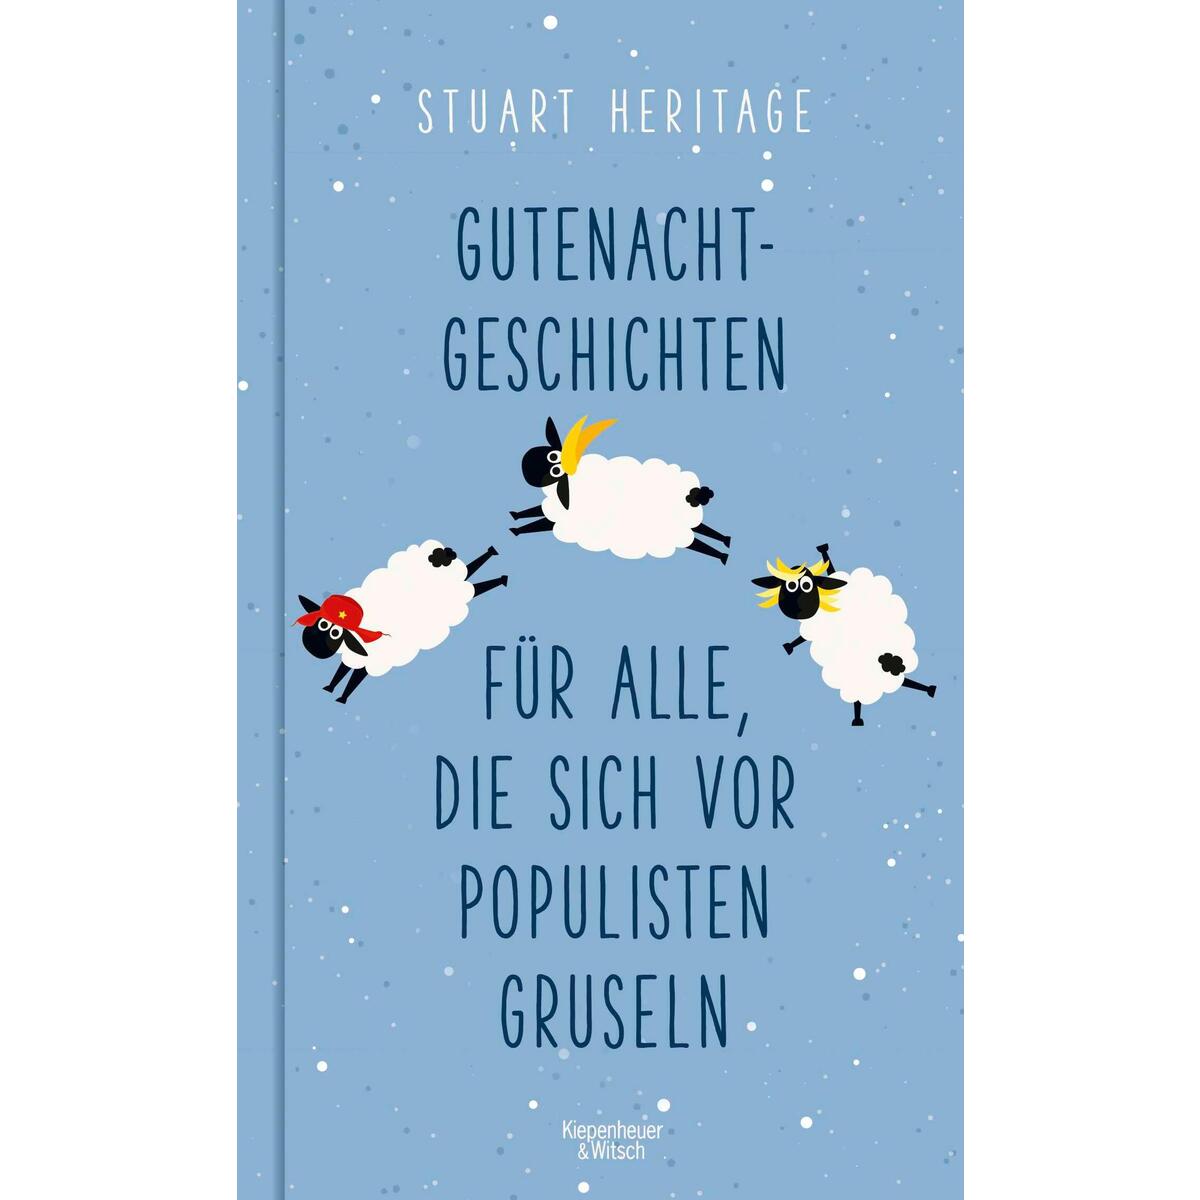 Gutenachtgeschichten für alle, die sich vor Populisten gruseln von Kiepenheuer & Witsch GmbH